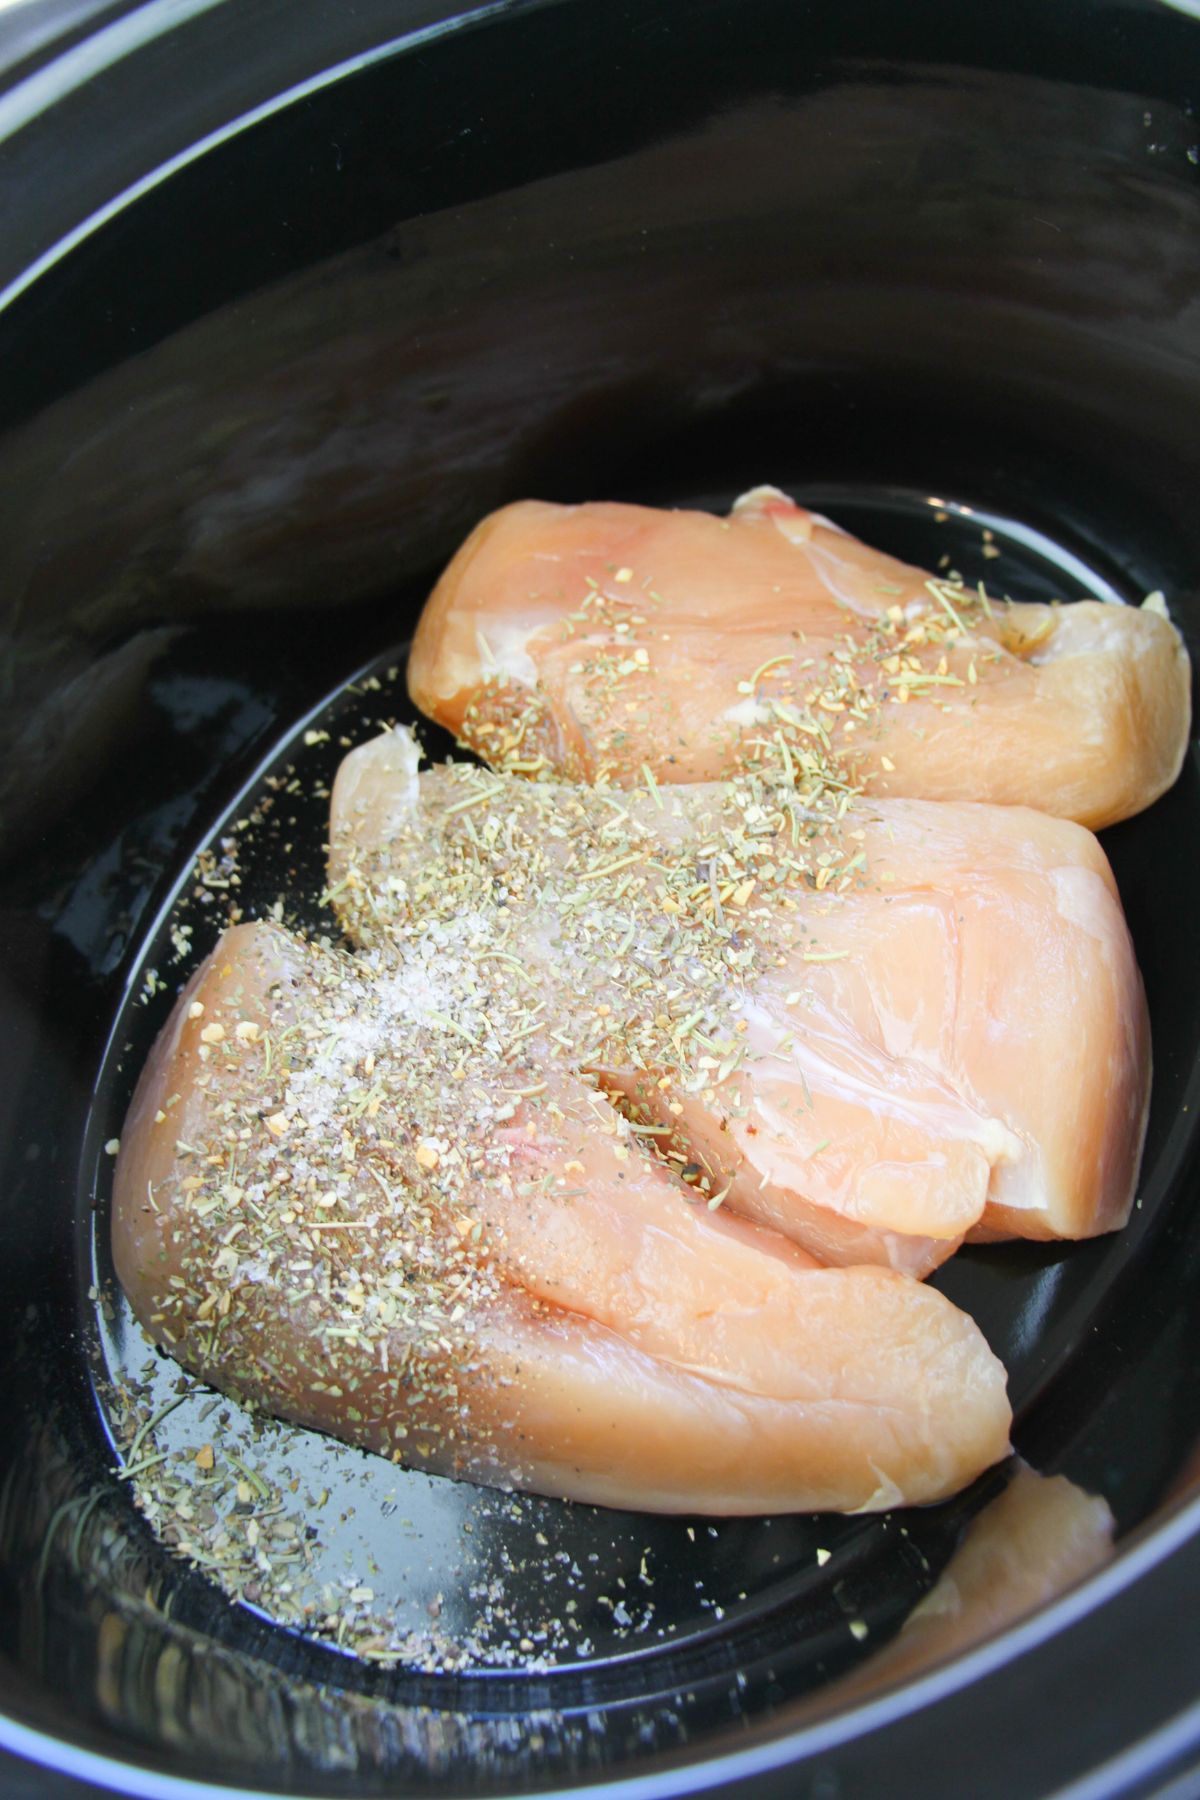 seasonings on 3 raw Chicken breasts in a crock pot